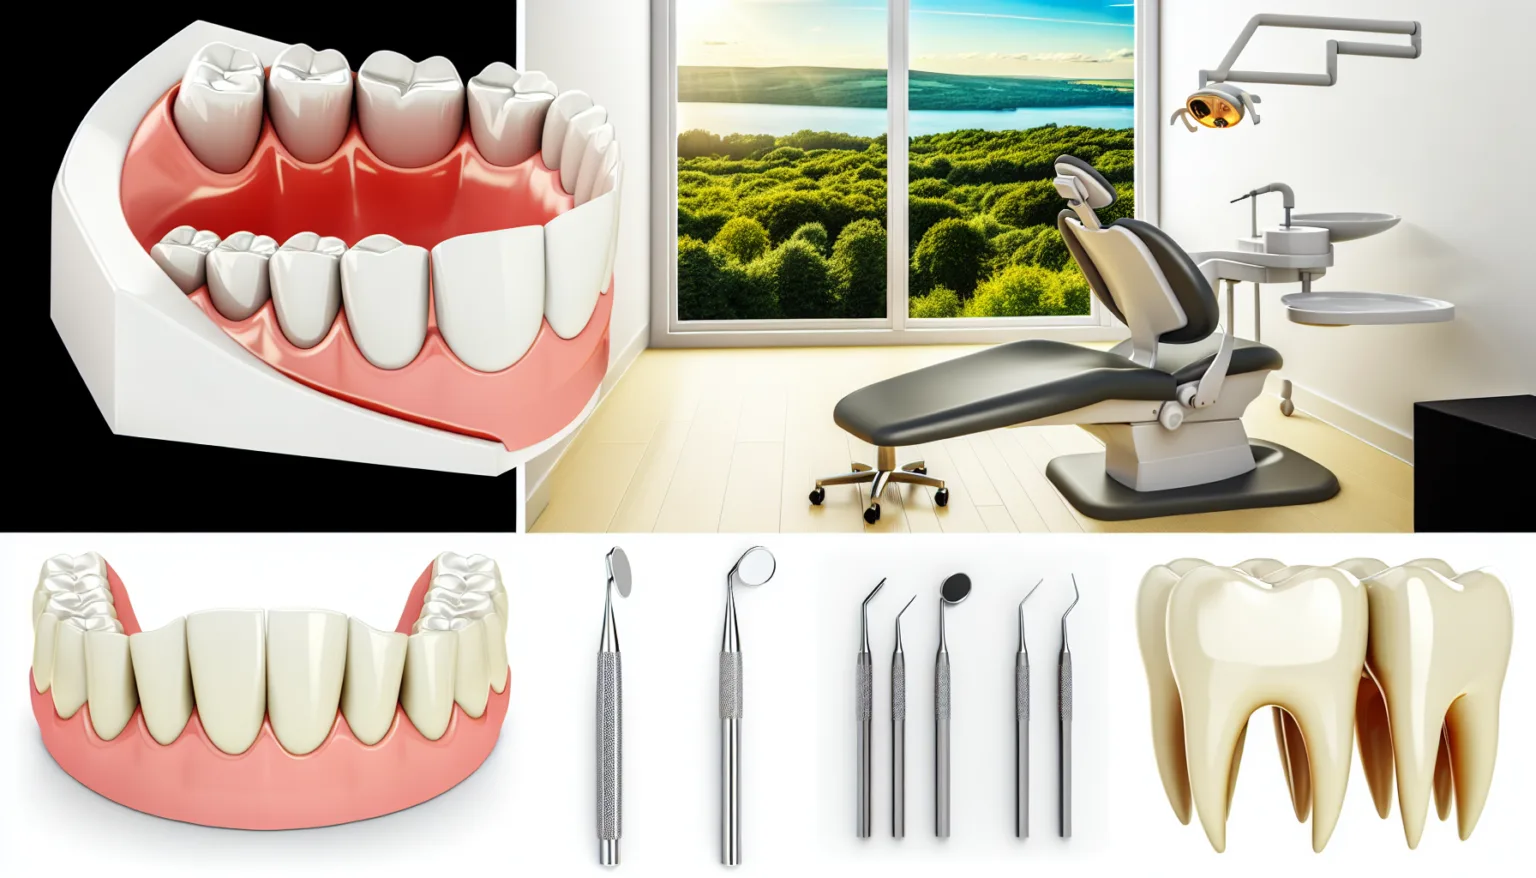 Dental-Veneers-Impact-A-Game-Changer-in-Aesthetic-Dental-Impro